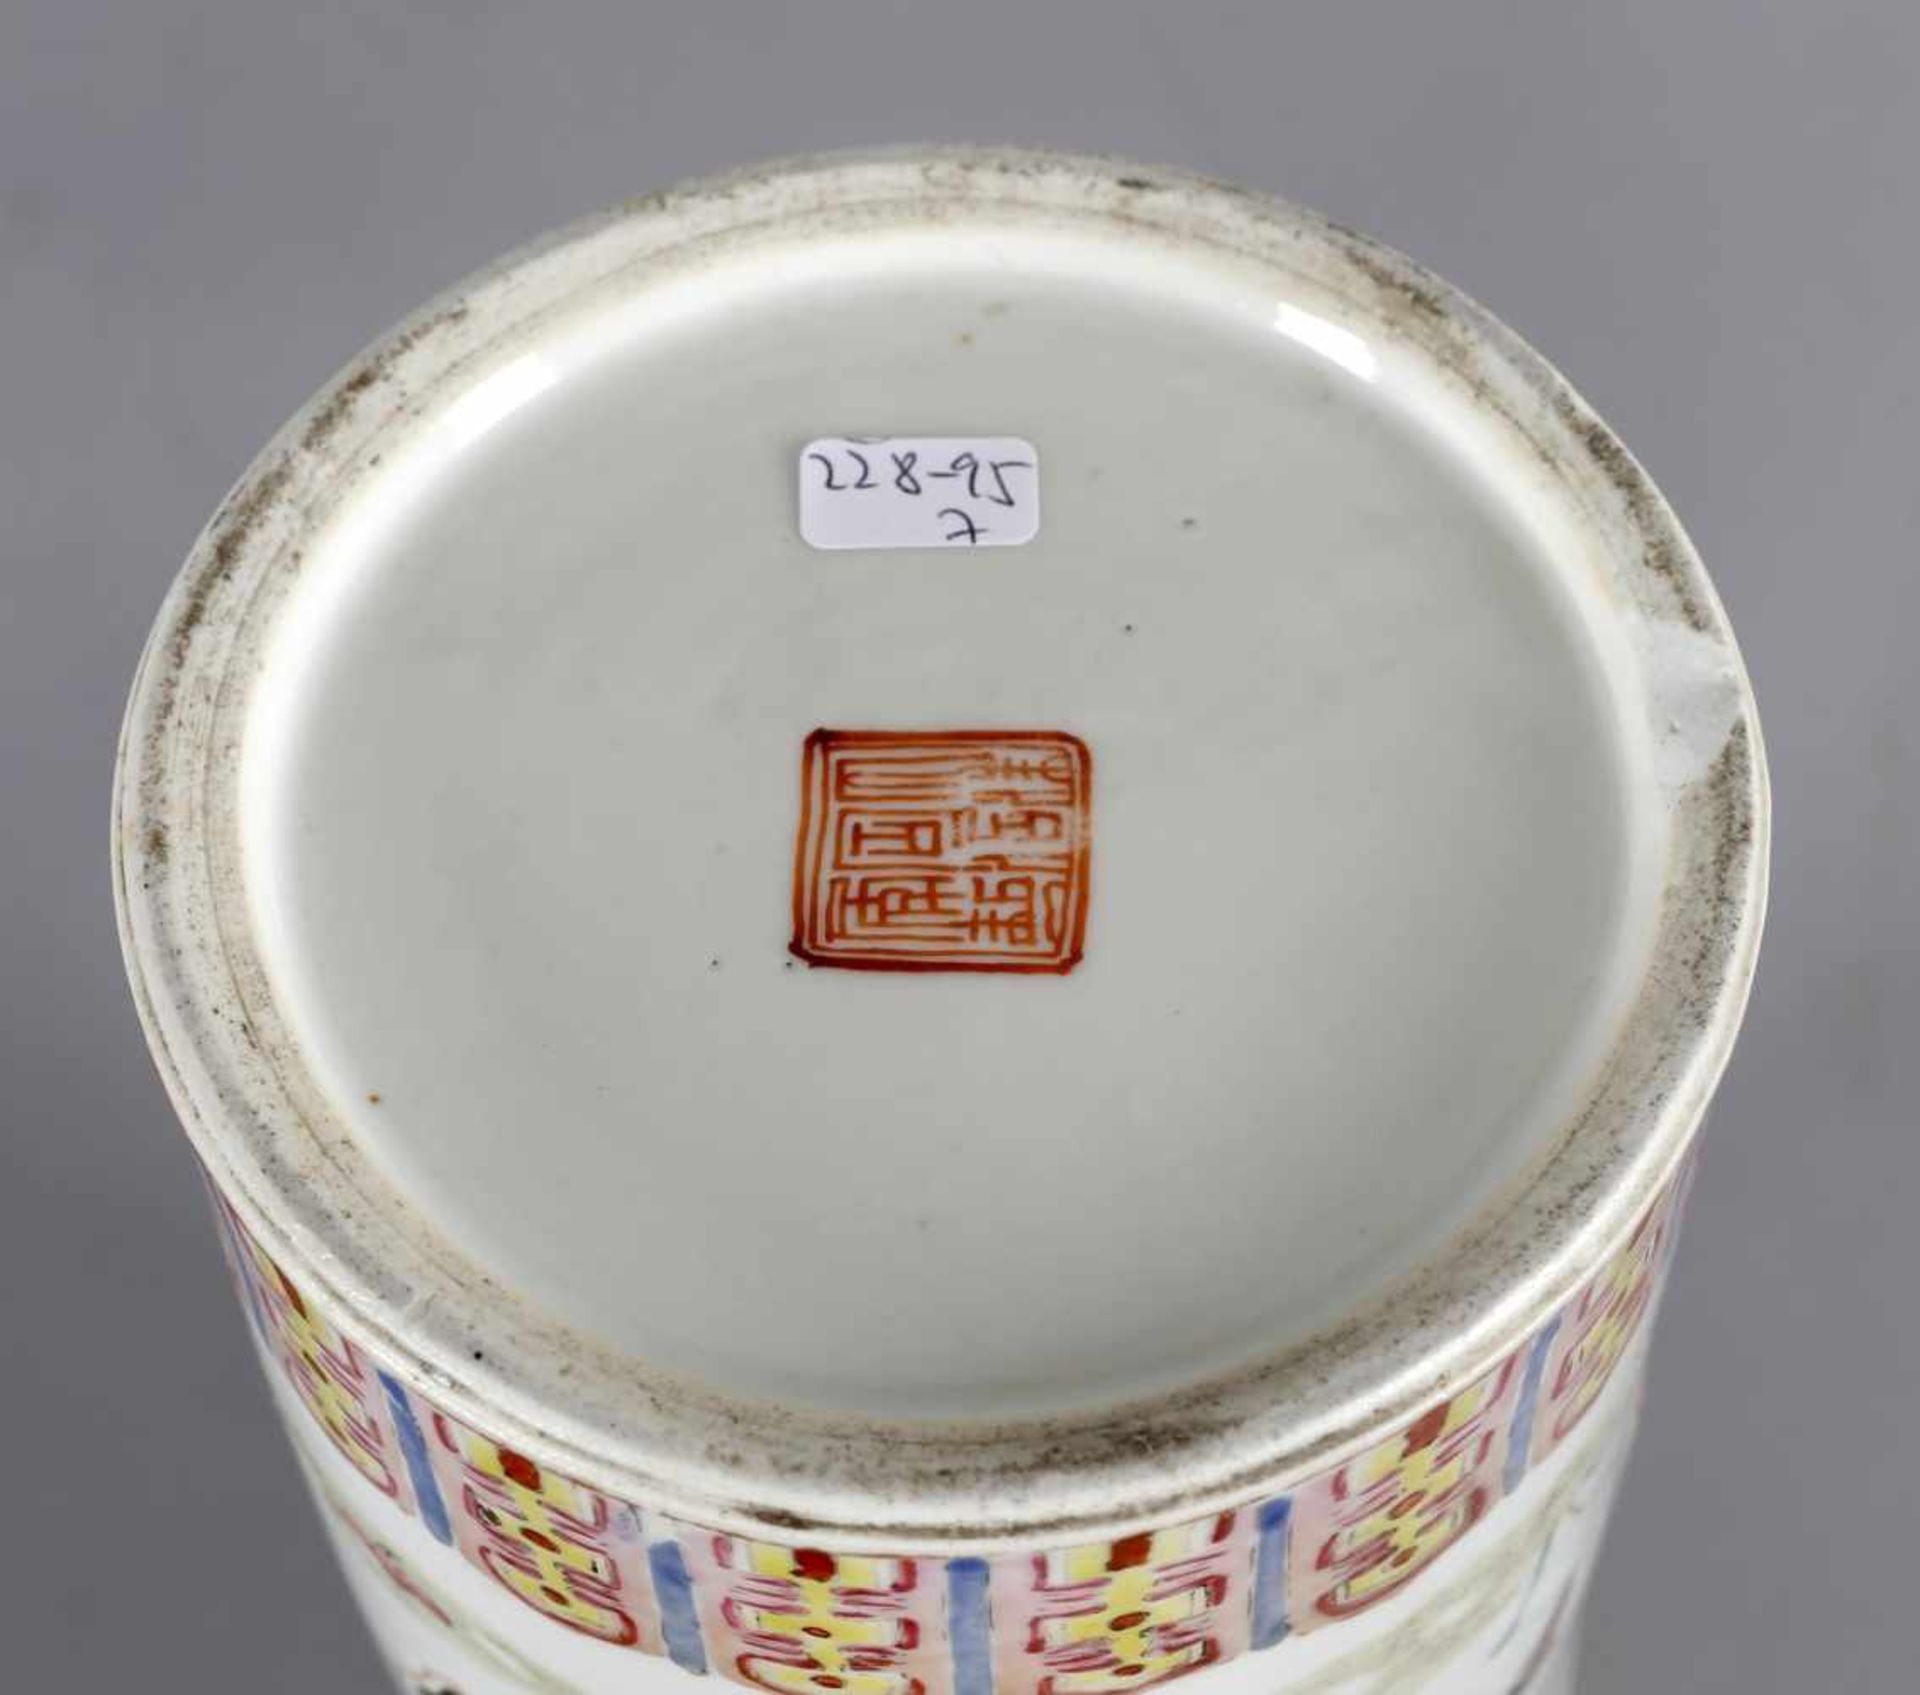 Hutständer aus Porzellan, China, 19. Jh.zylindrische Form mit ovalen Öffnungen in der Wandung, - Image 2 of 2